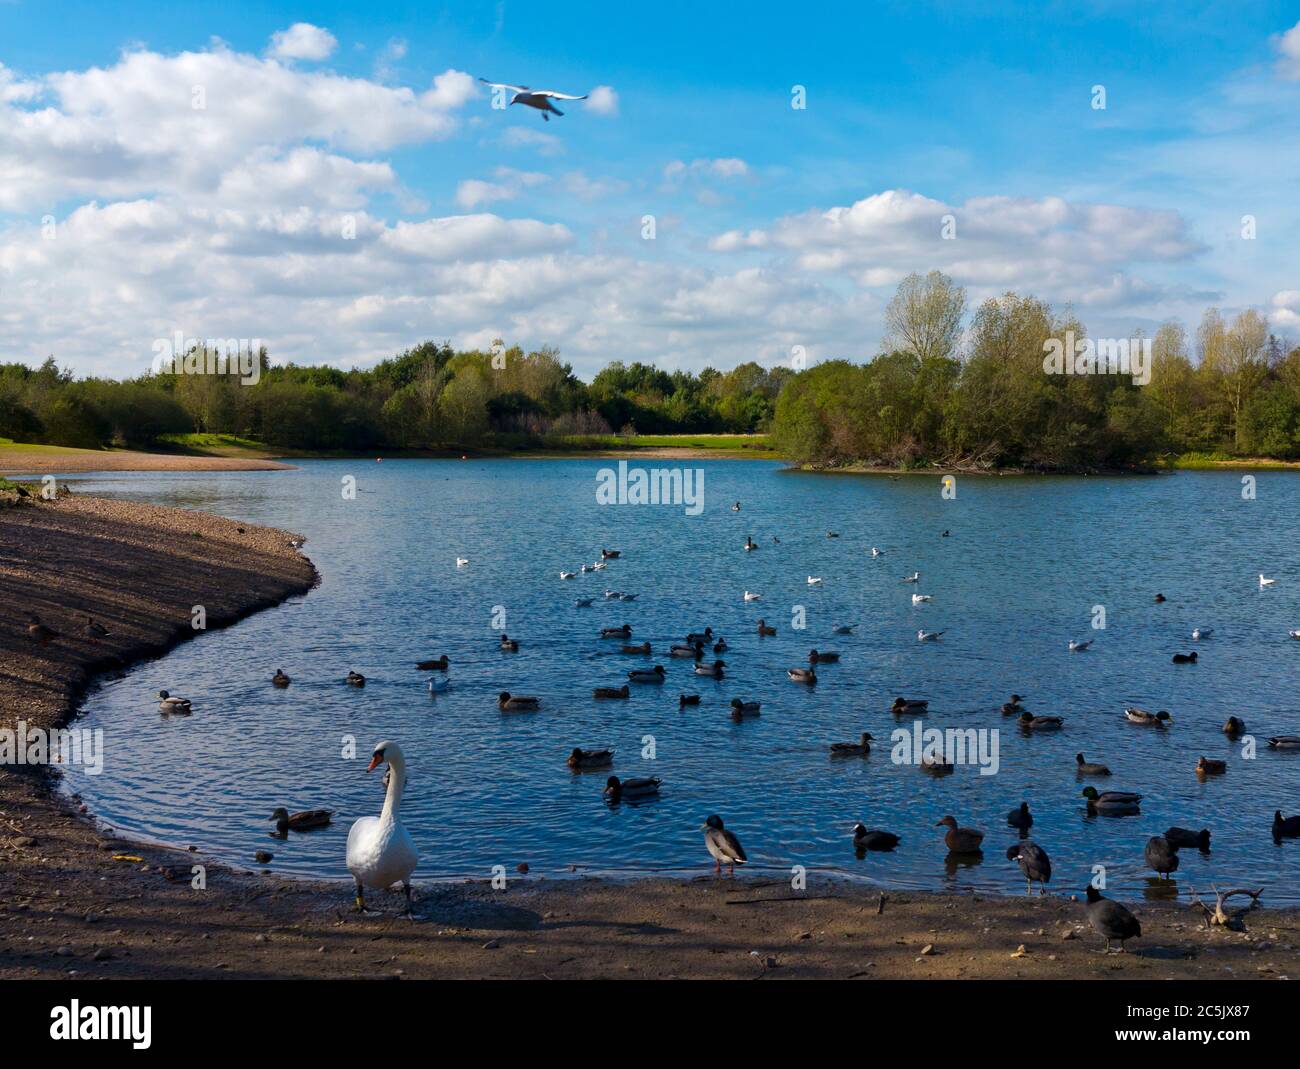 Oiseaux aquatiques à Barton Marina sur le canal Trent et Mersey dans le Staffordshire, Angleterre, Royaume-Uni. Banque D'Images